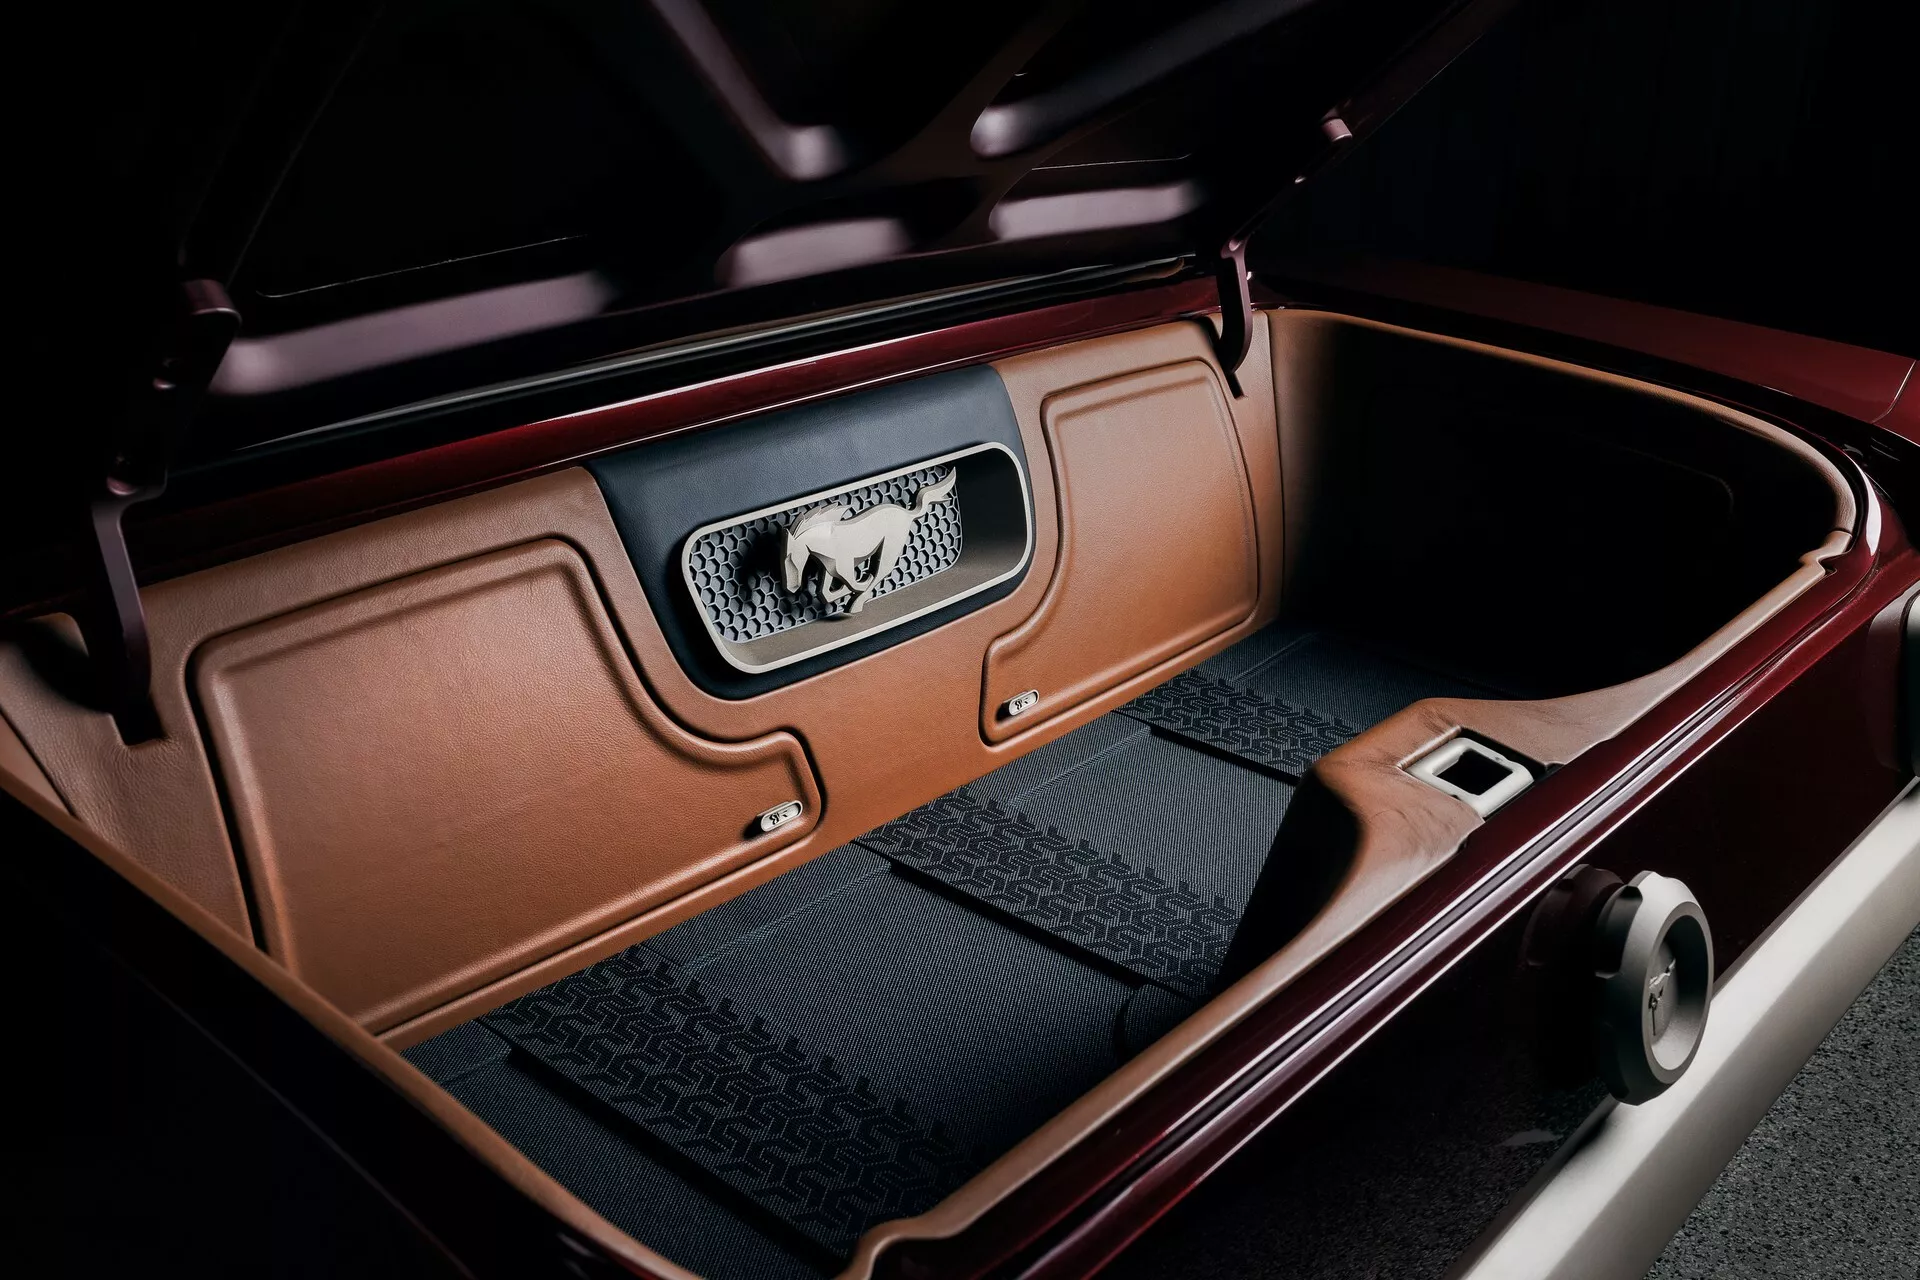 تدشين واحدة من أجمل سيارات فورد موستنج الكلاسيكية في معرض سيما الأمريكي بمحرك 8 سلندر عصري 8